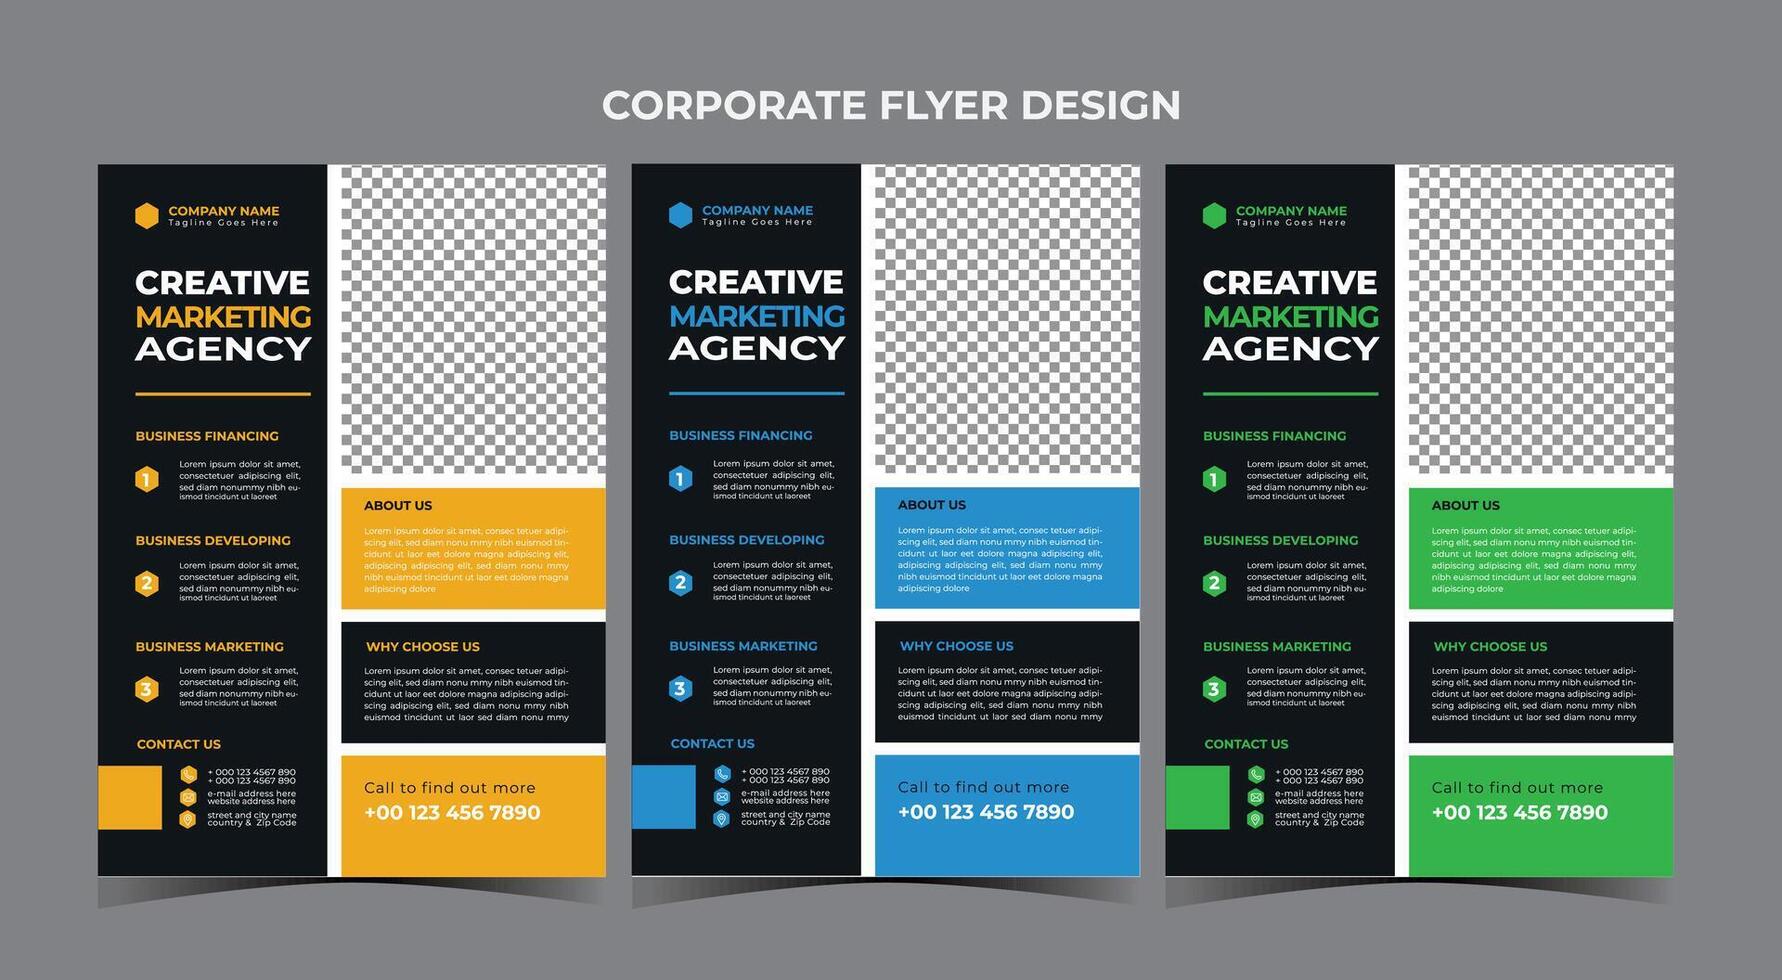 Corporate Business Flyer Design-Vorlage vektor